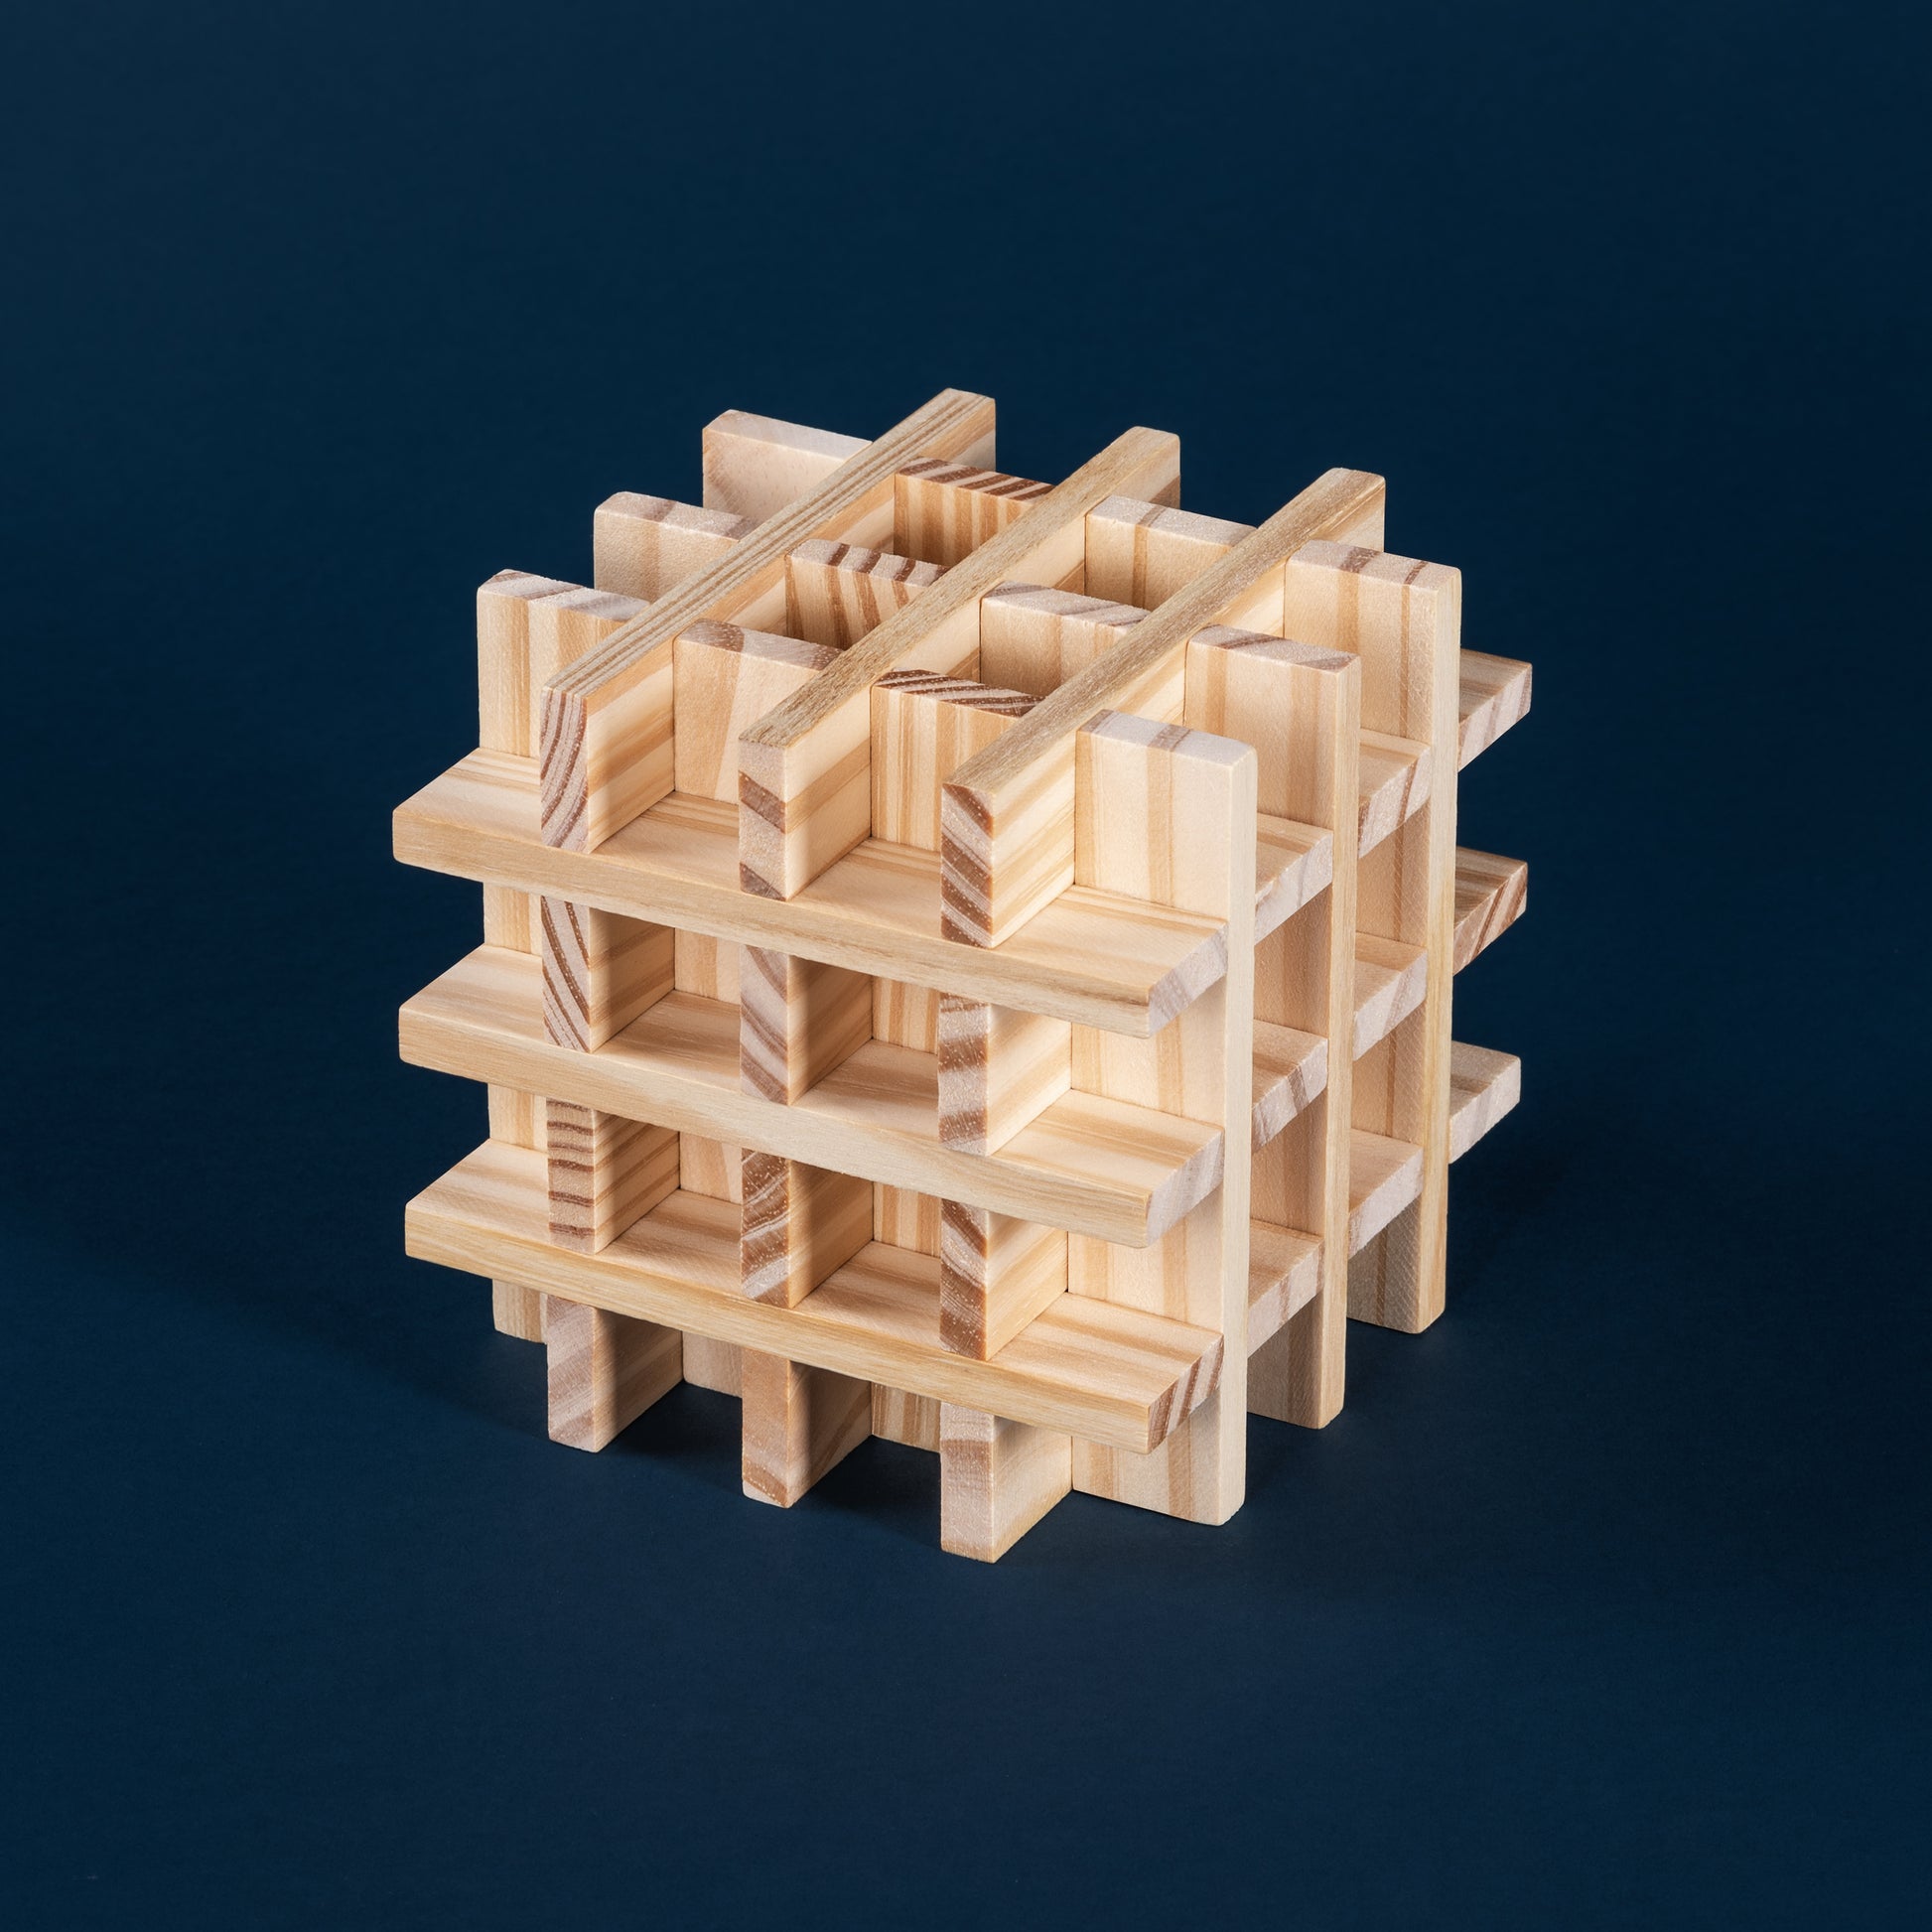 Komplexe dreidimensionale Struktur aus Holzklötzen auf dunkelblauem Hintergrund